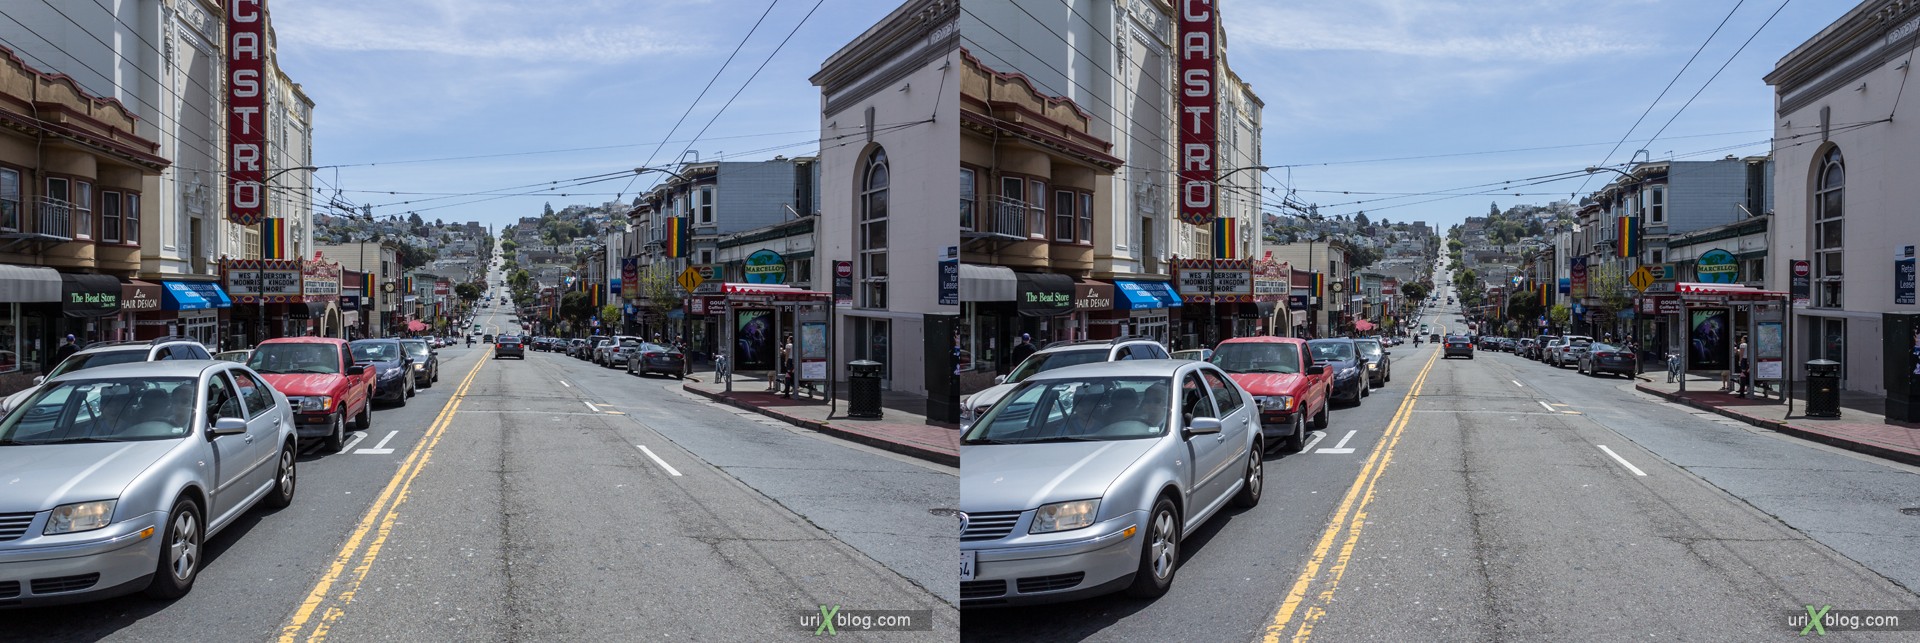 2013, Castro, Сан-Франциско, США, 3D, перекрёстные стереопары, стерео, стереопара, стереопары